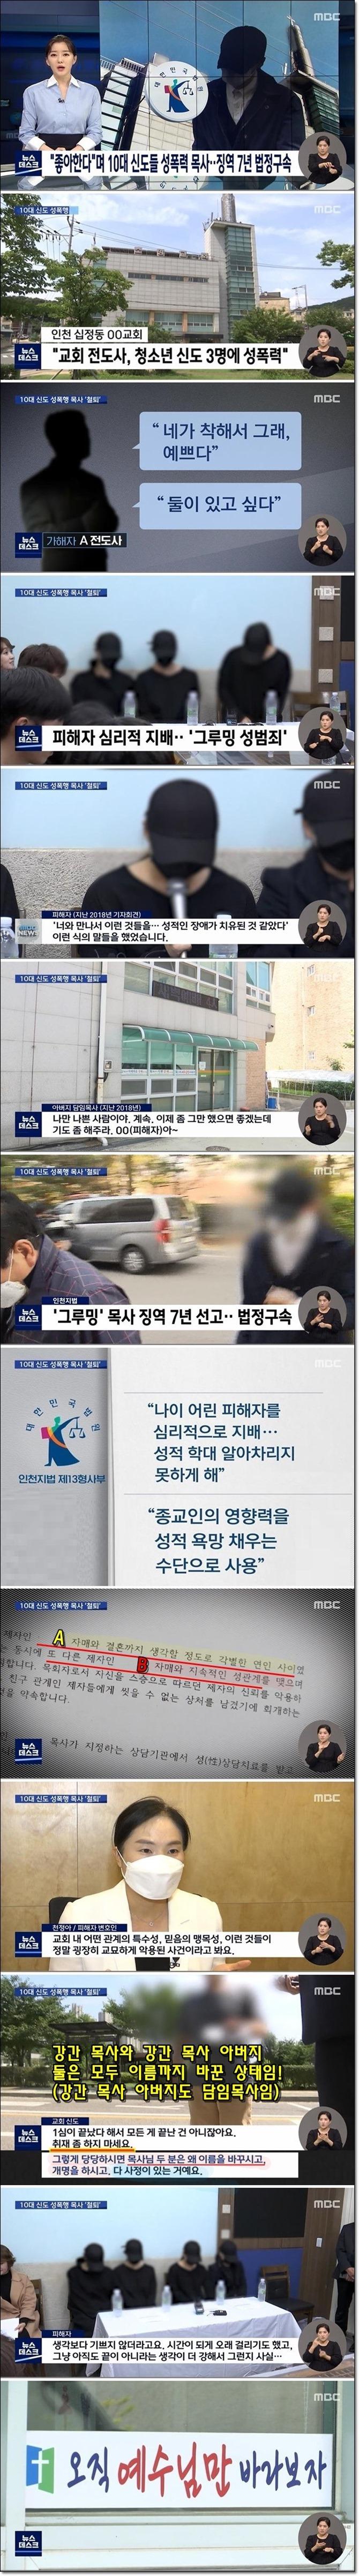 10대 소녀 신도들 강간 목사 징역 7년.jpg